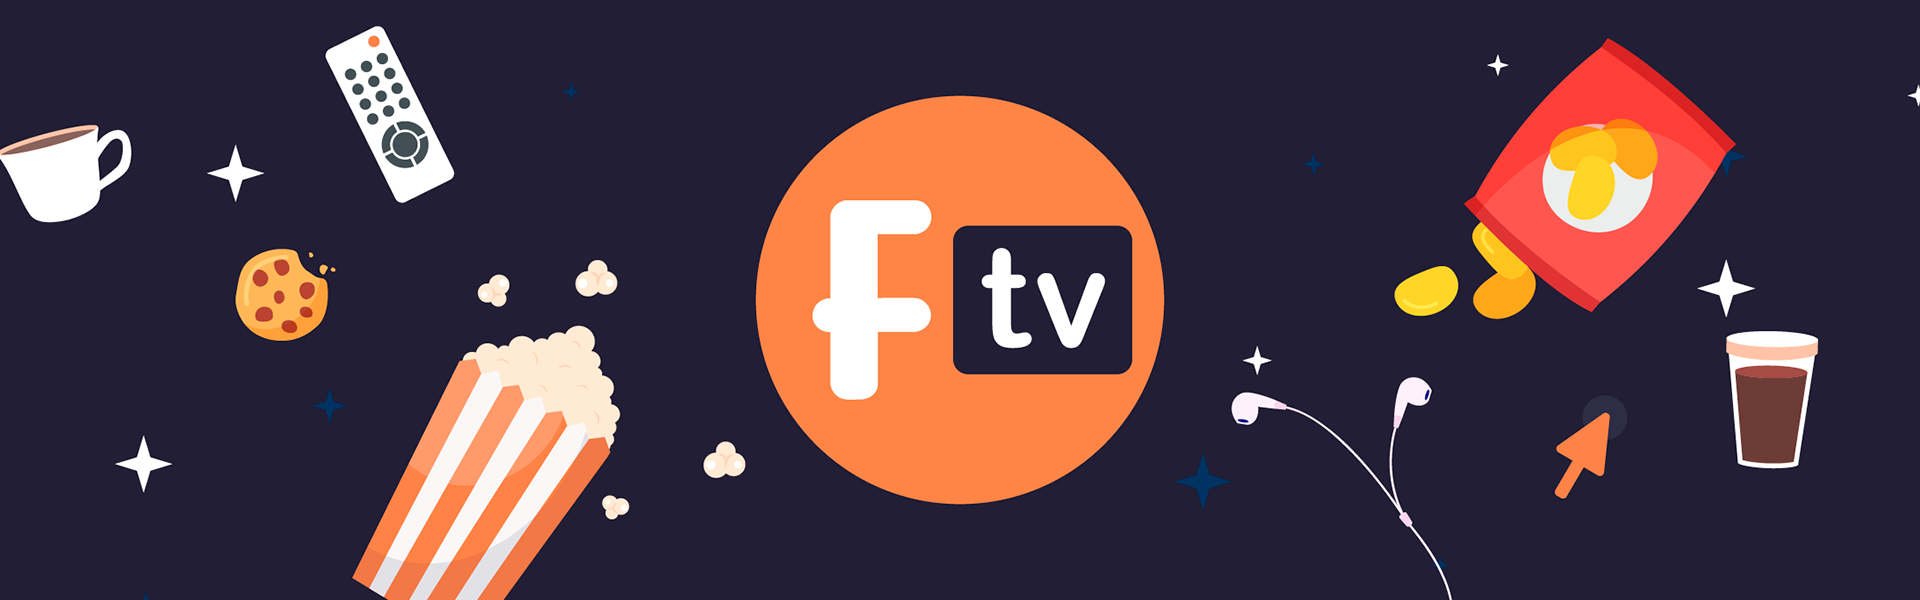 Filmelier TV: Todo sobre el nuevo canal de películas gratis